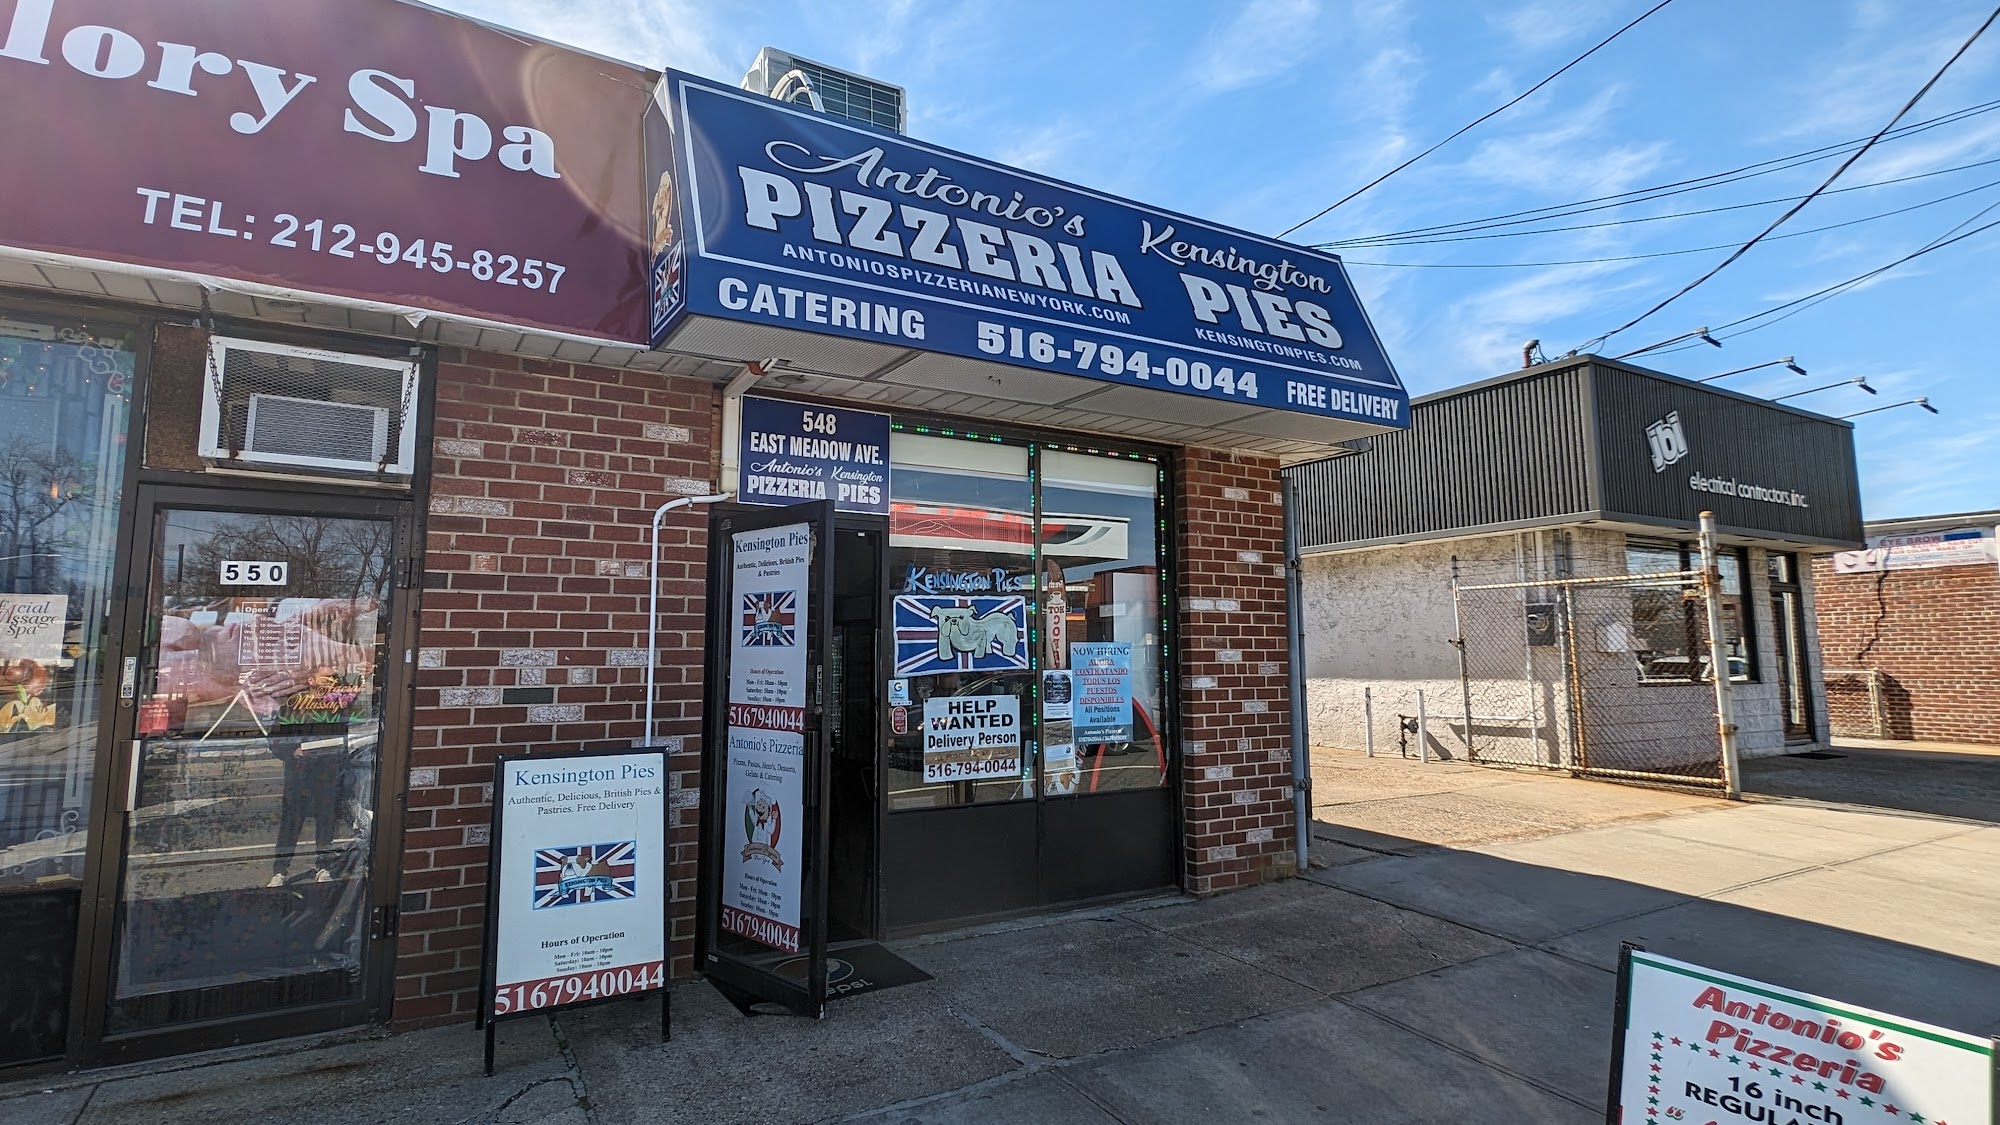 Antonio's Pizzeria New York